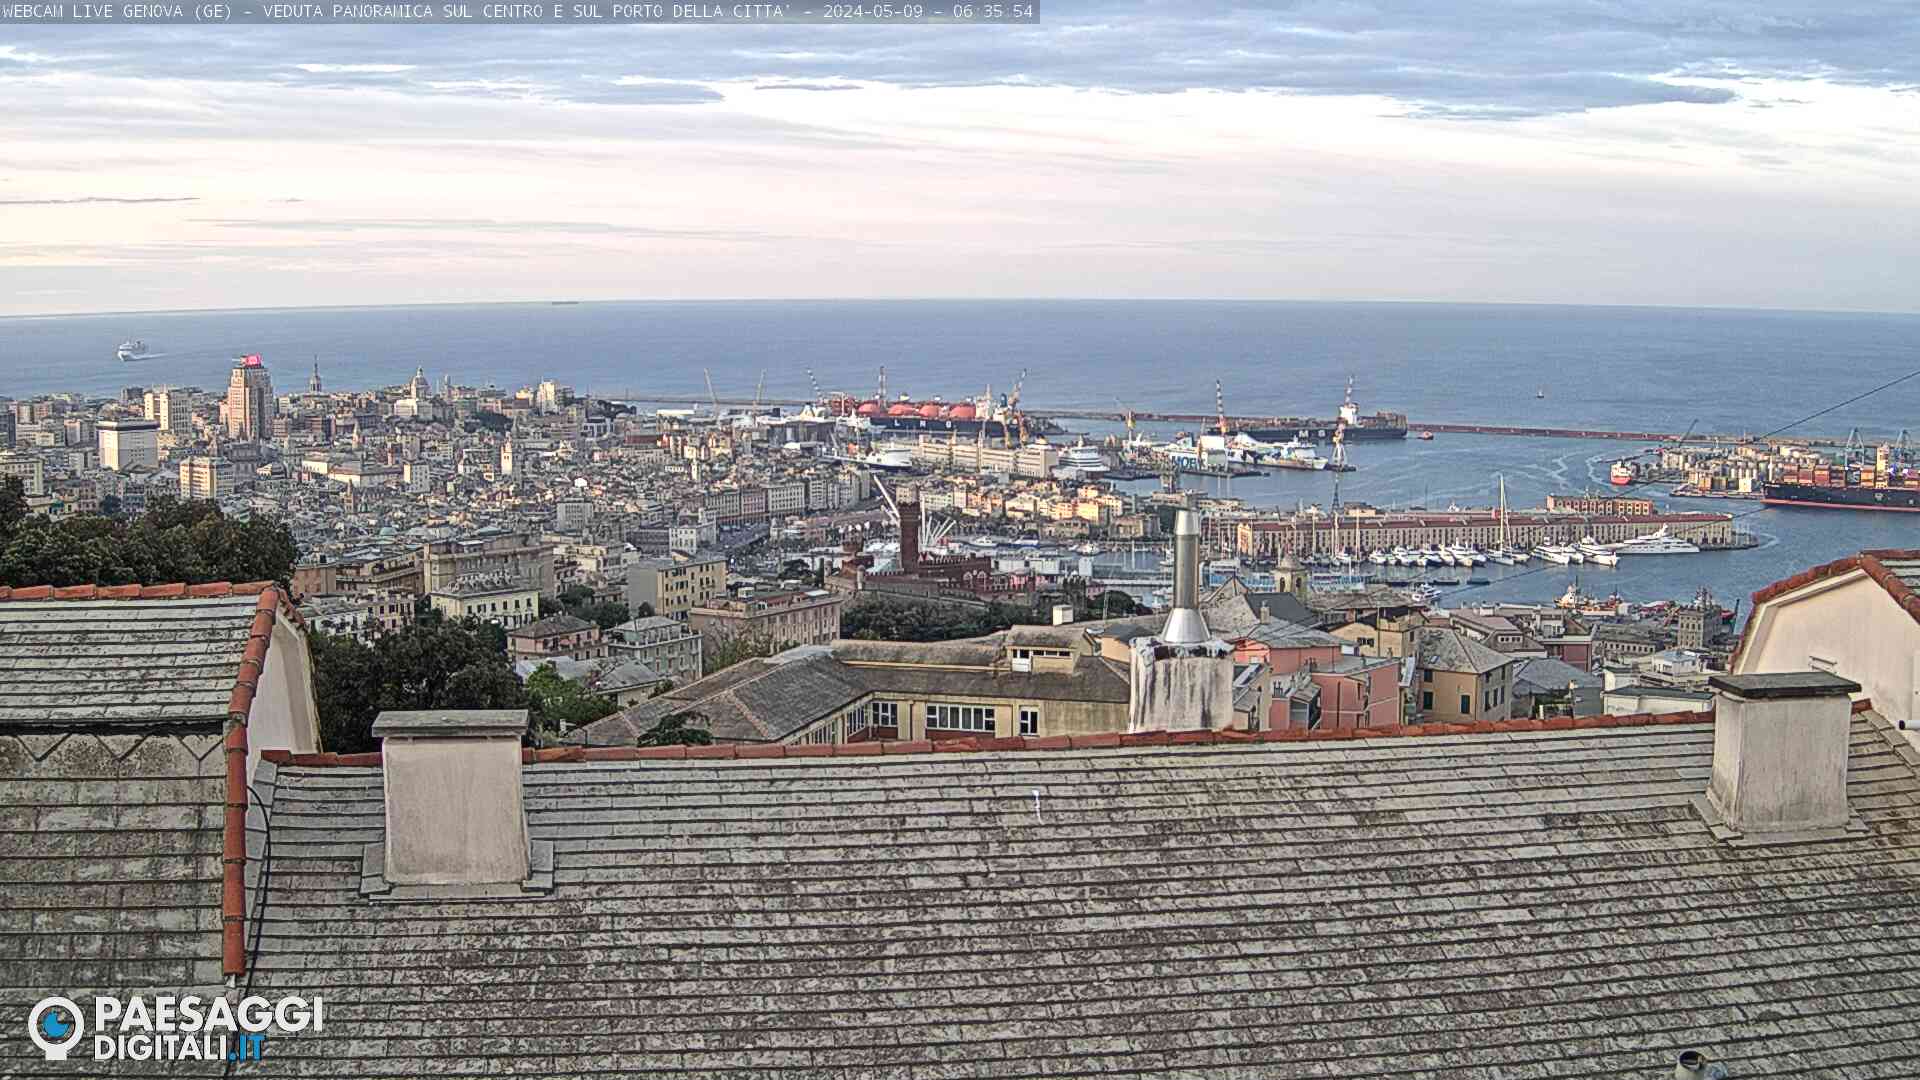 Genova (GE) – Panoramica sul porto e centro città